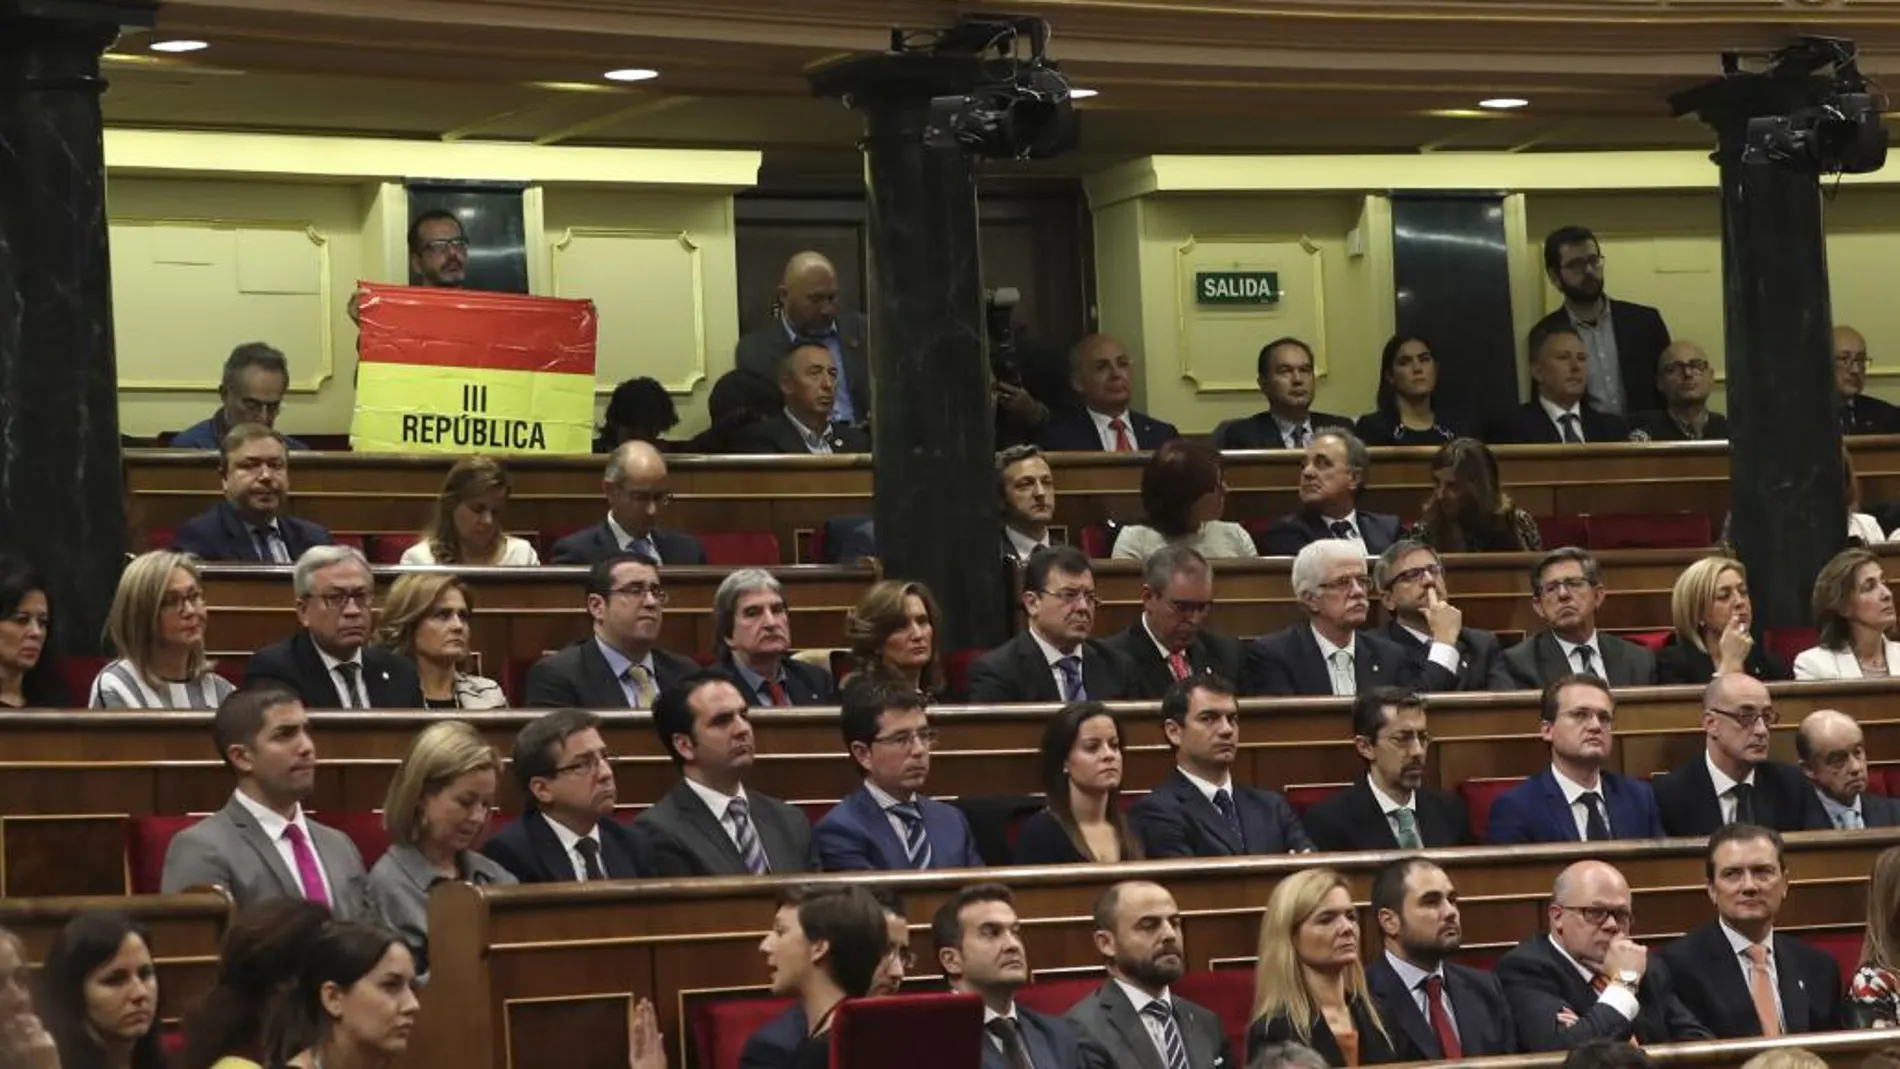 El senador navarro de IU, Iñaki Bernal, ha mantenido desplegada una bandera republicana desde su escaño en lo alto del hemiciclo